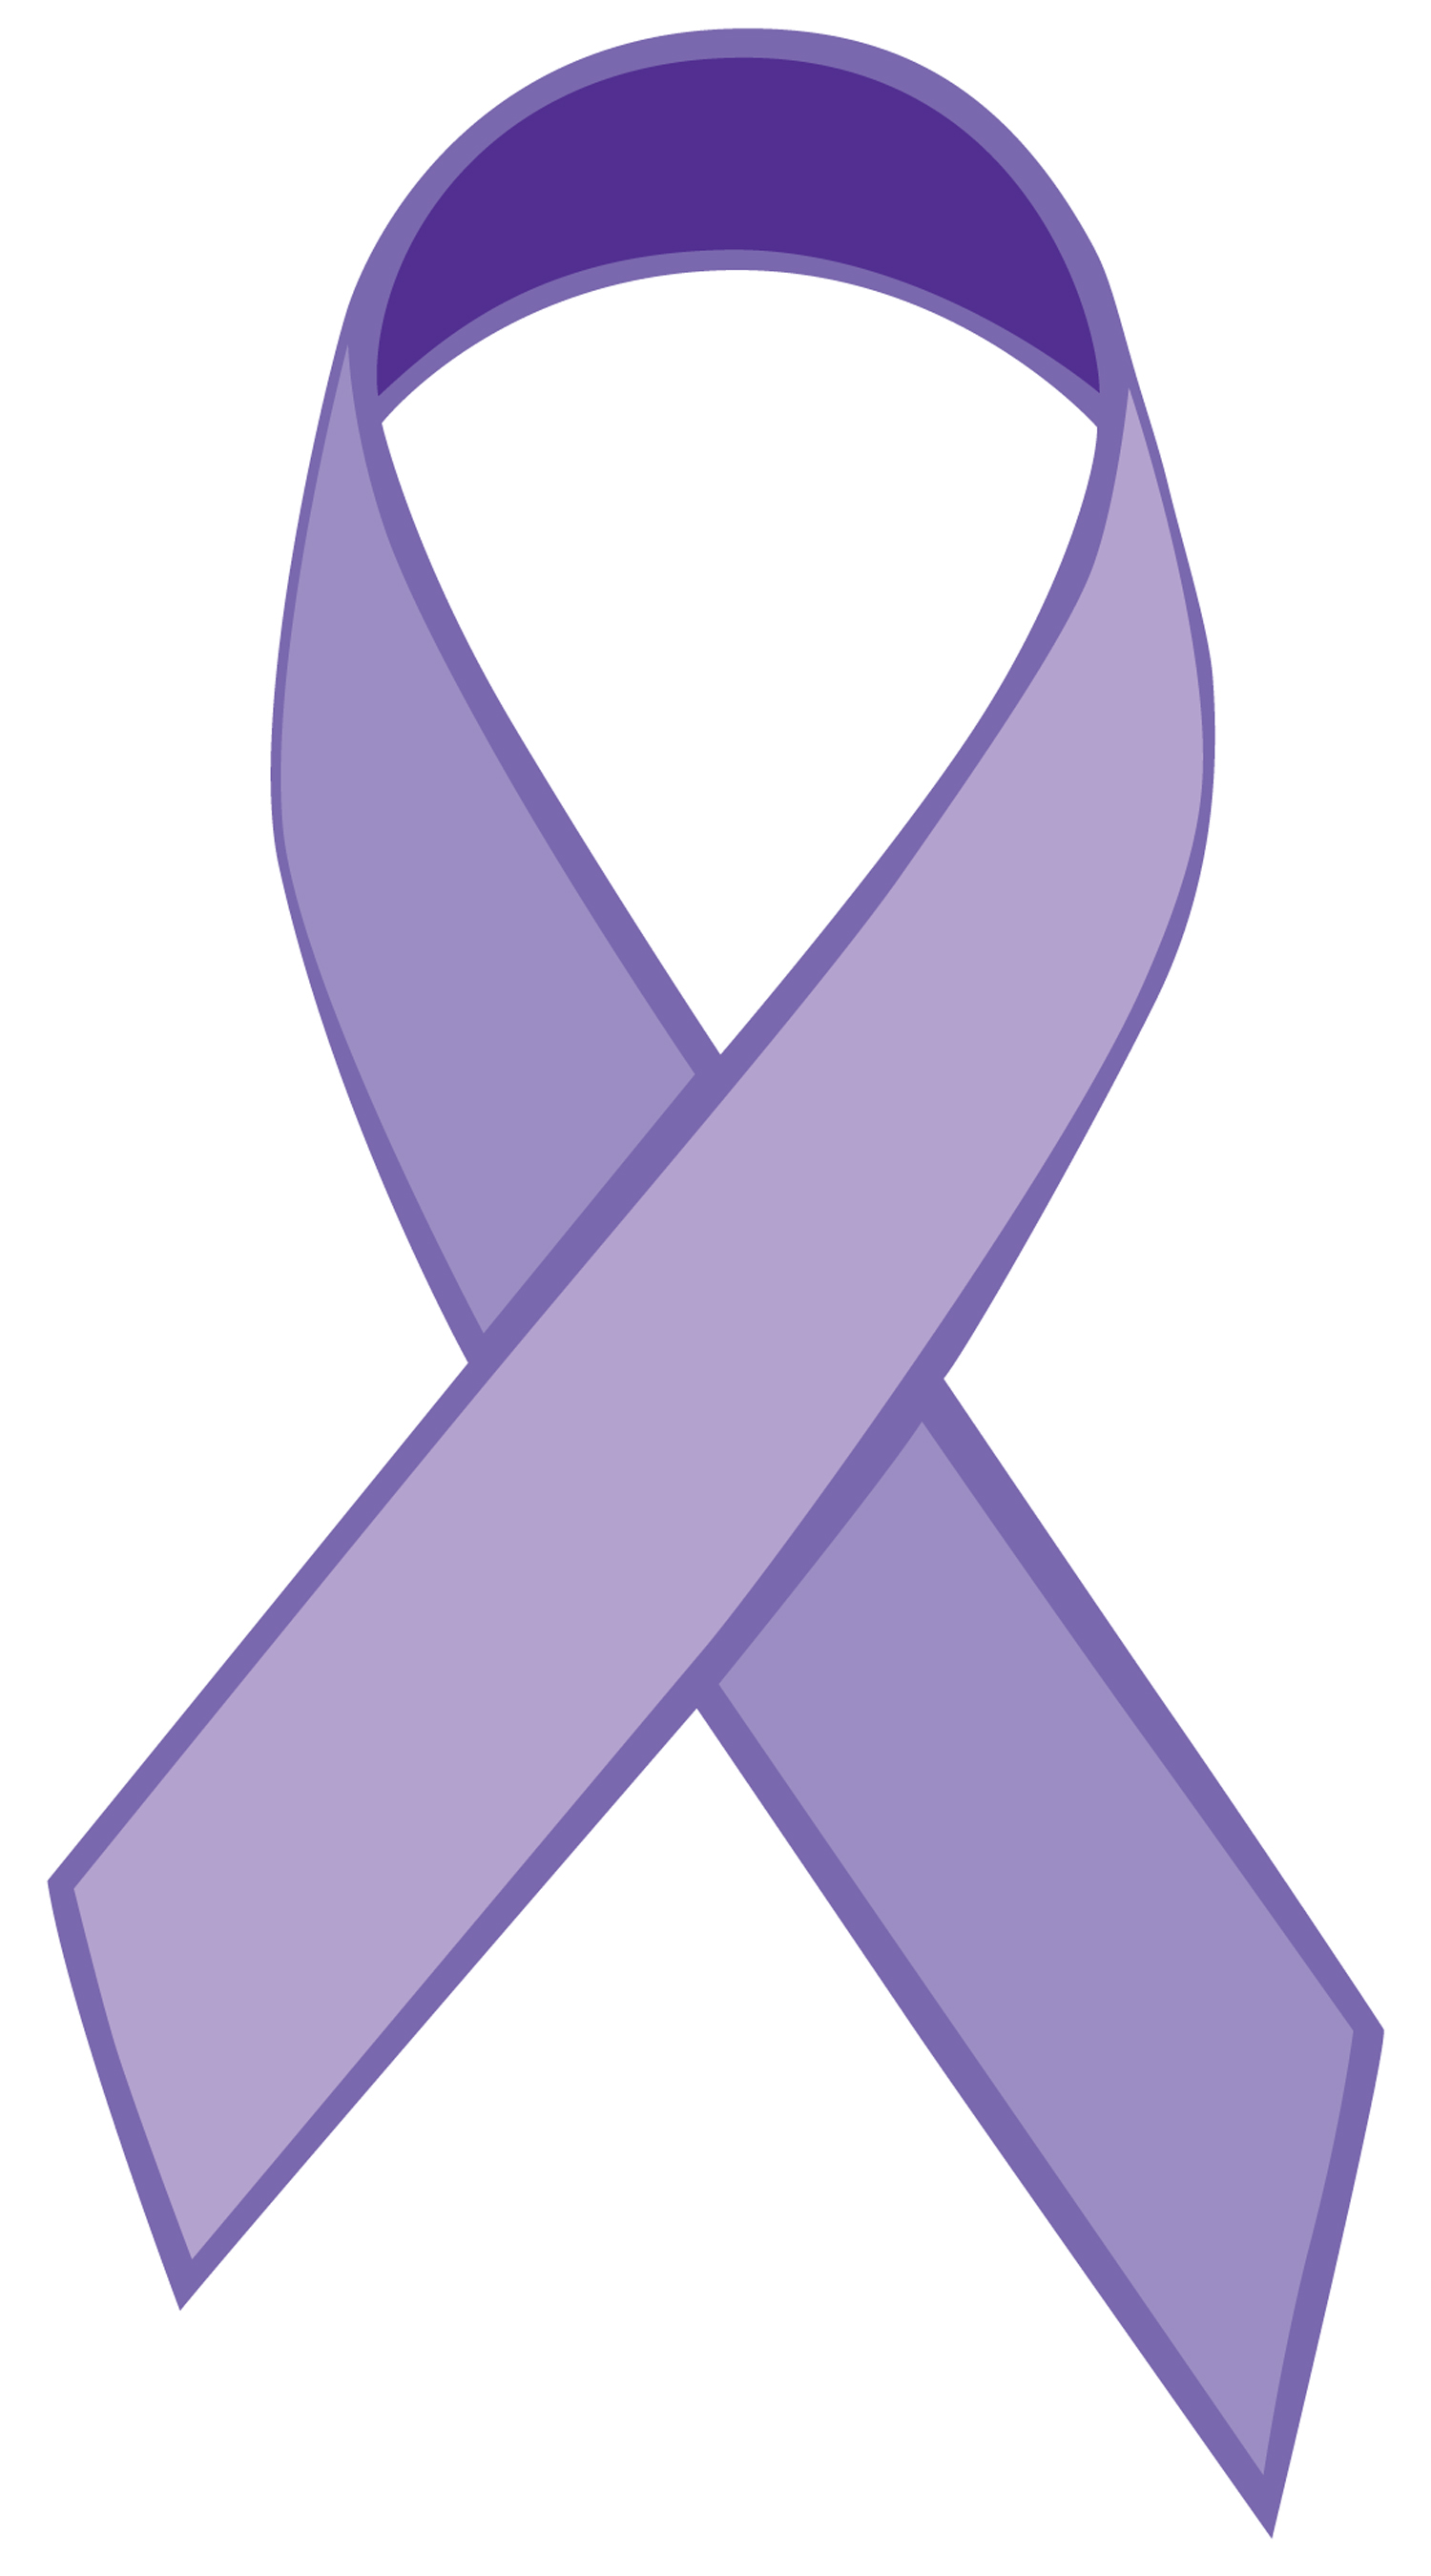 Pour quel cancer est violet?